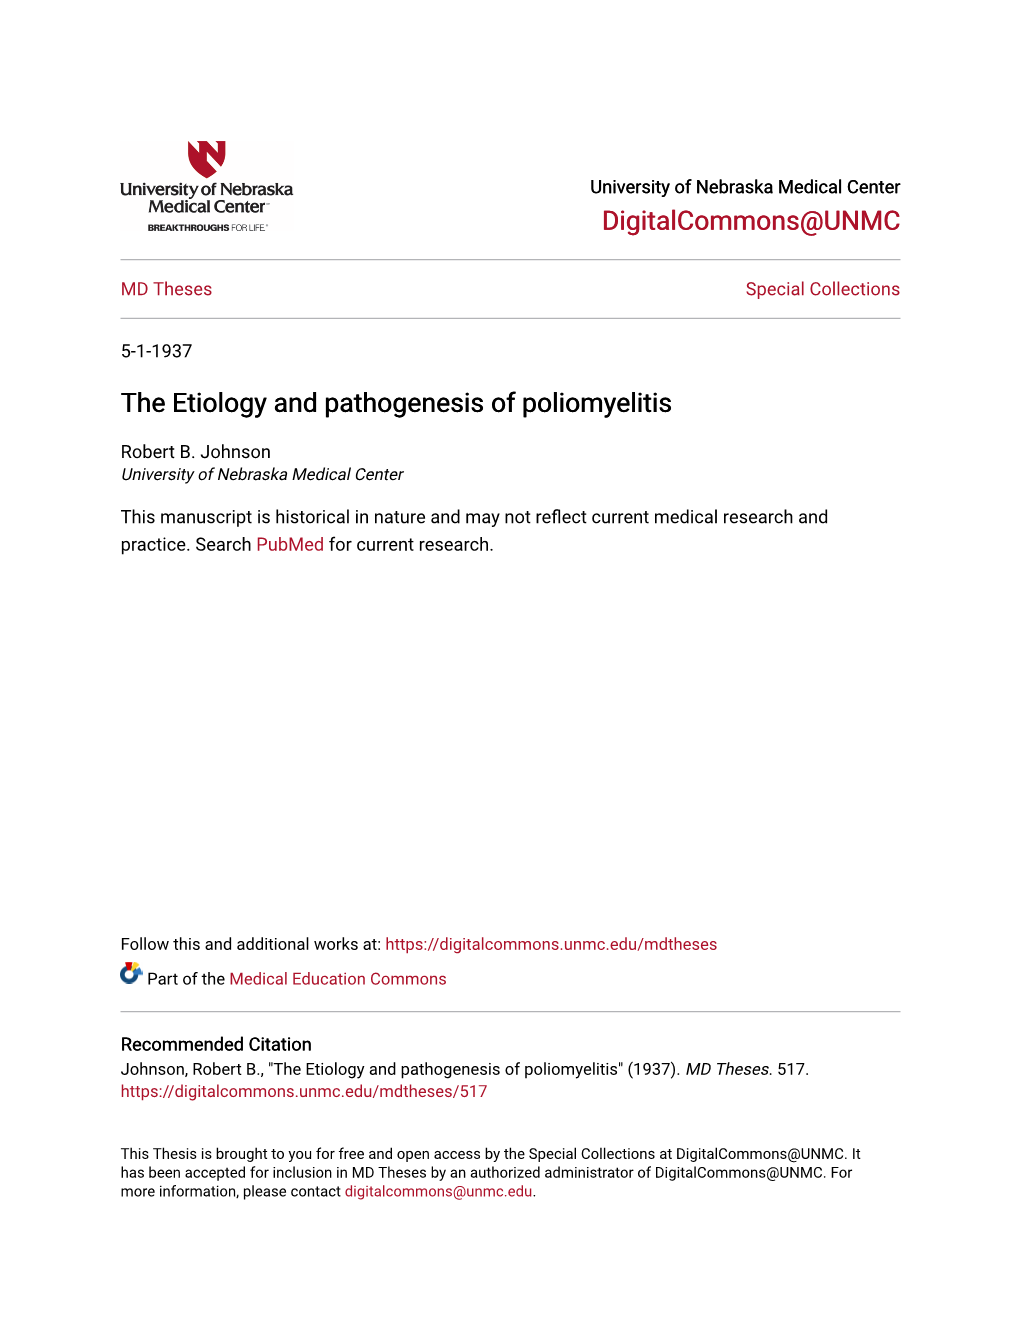 The Etiology and Pathogenesis of Poliomyelitis